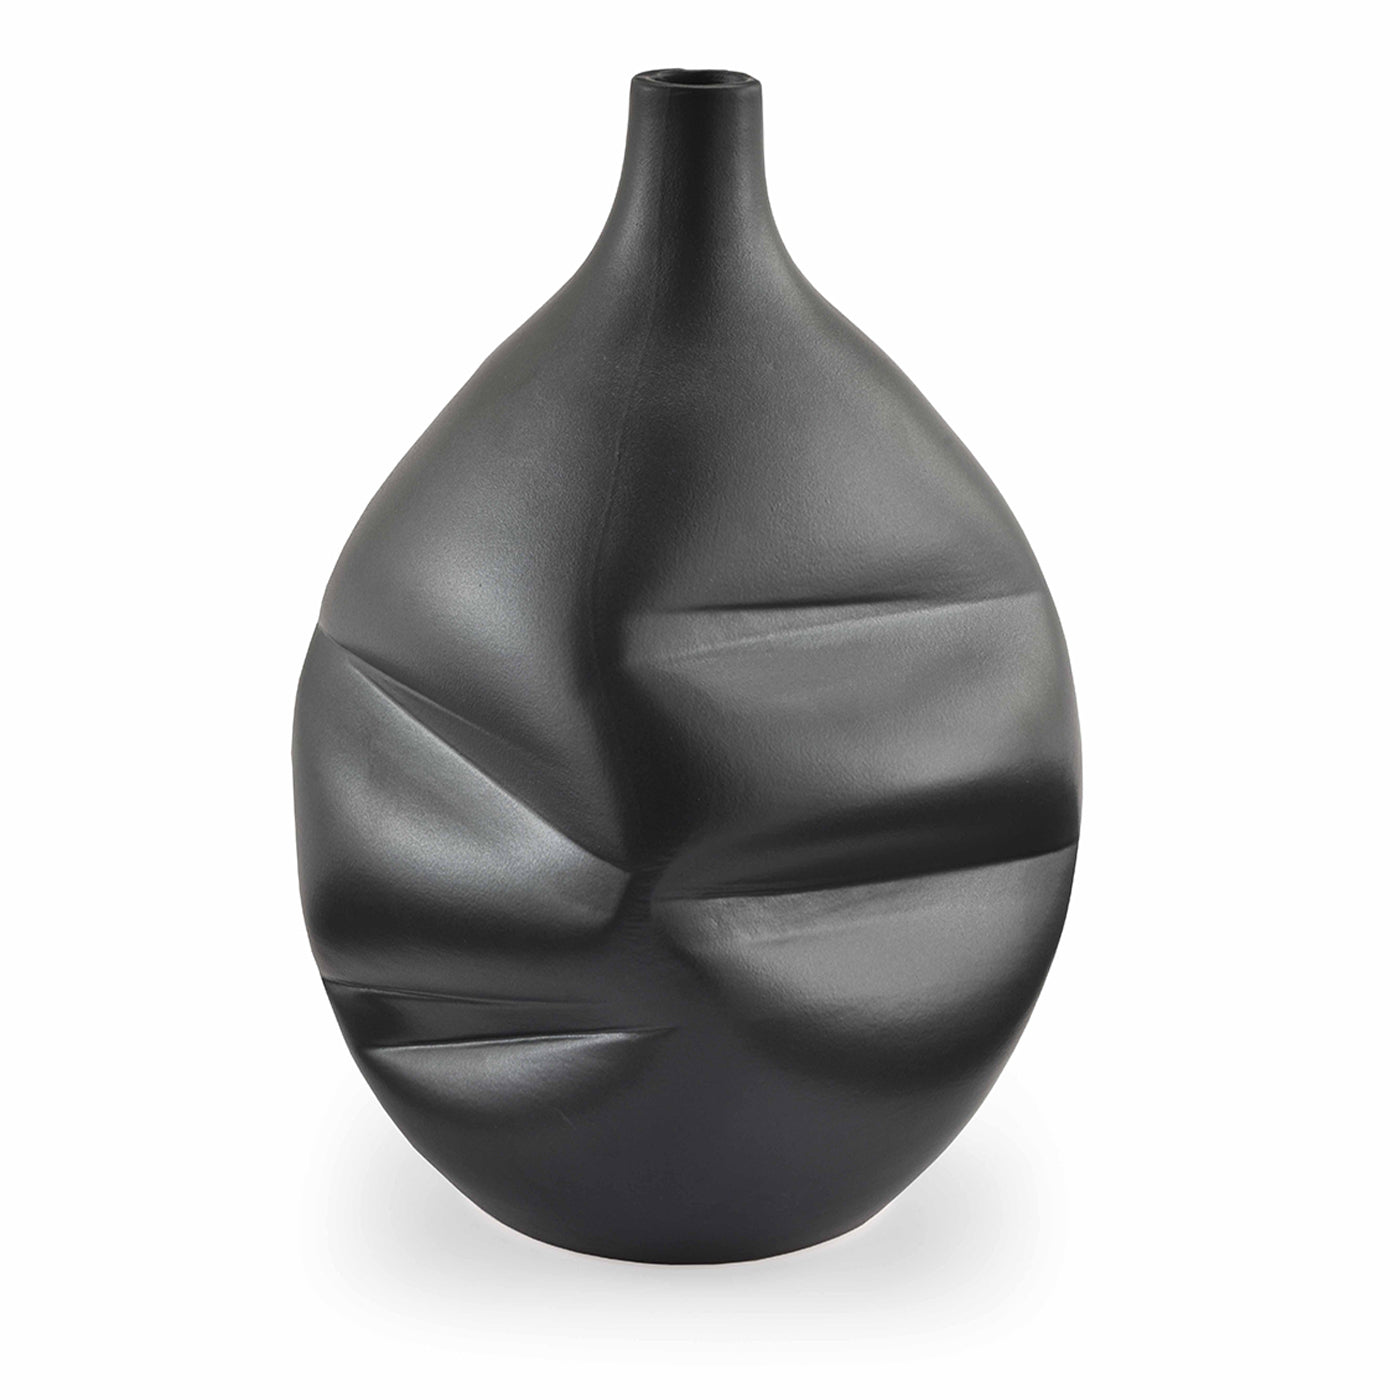 Scar Black Vase - Alternative view 1